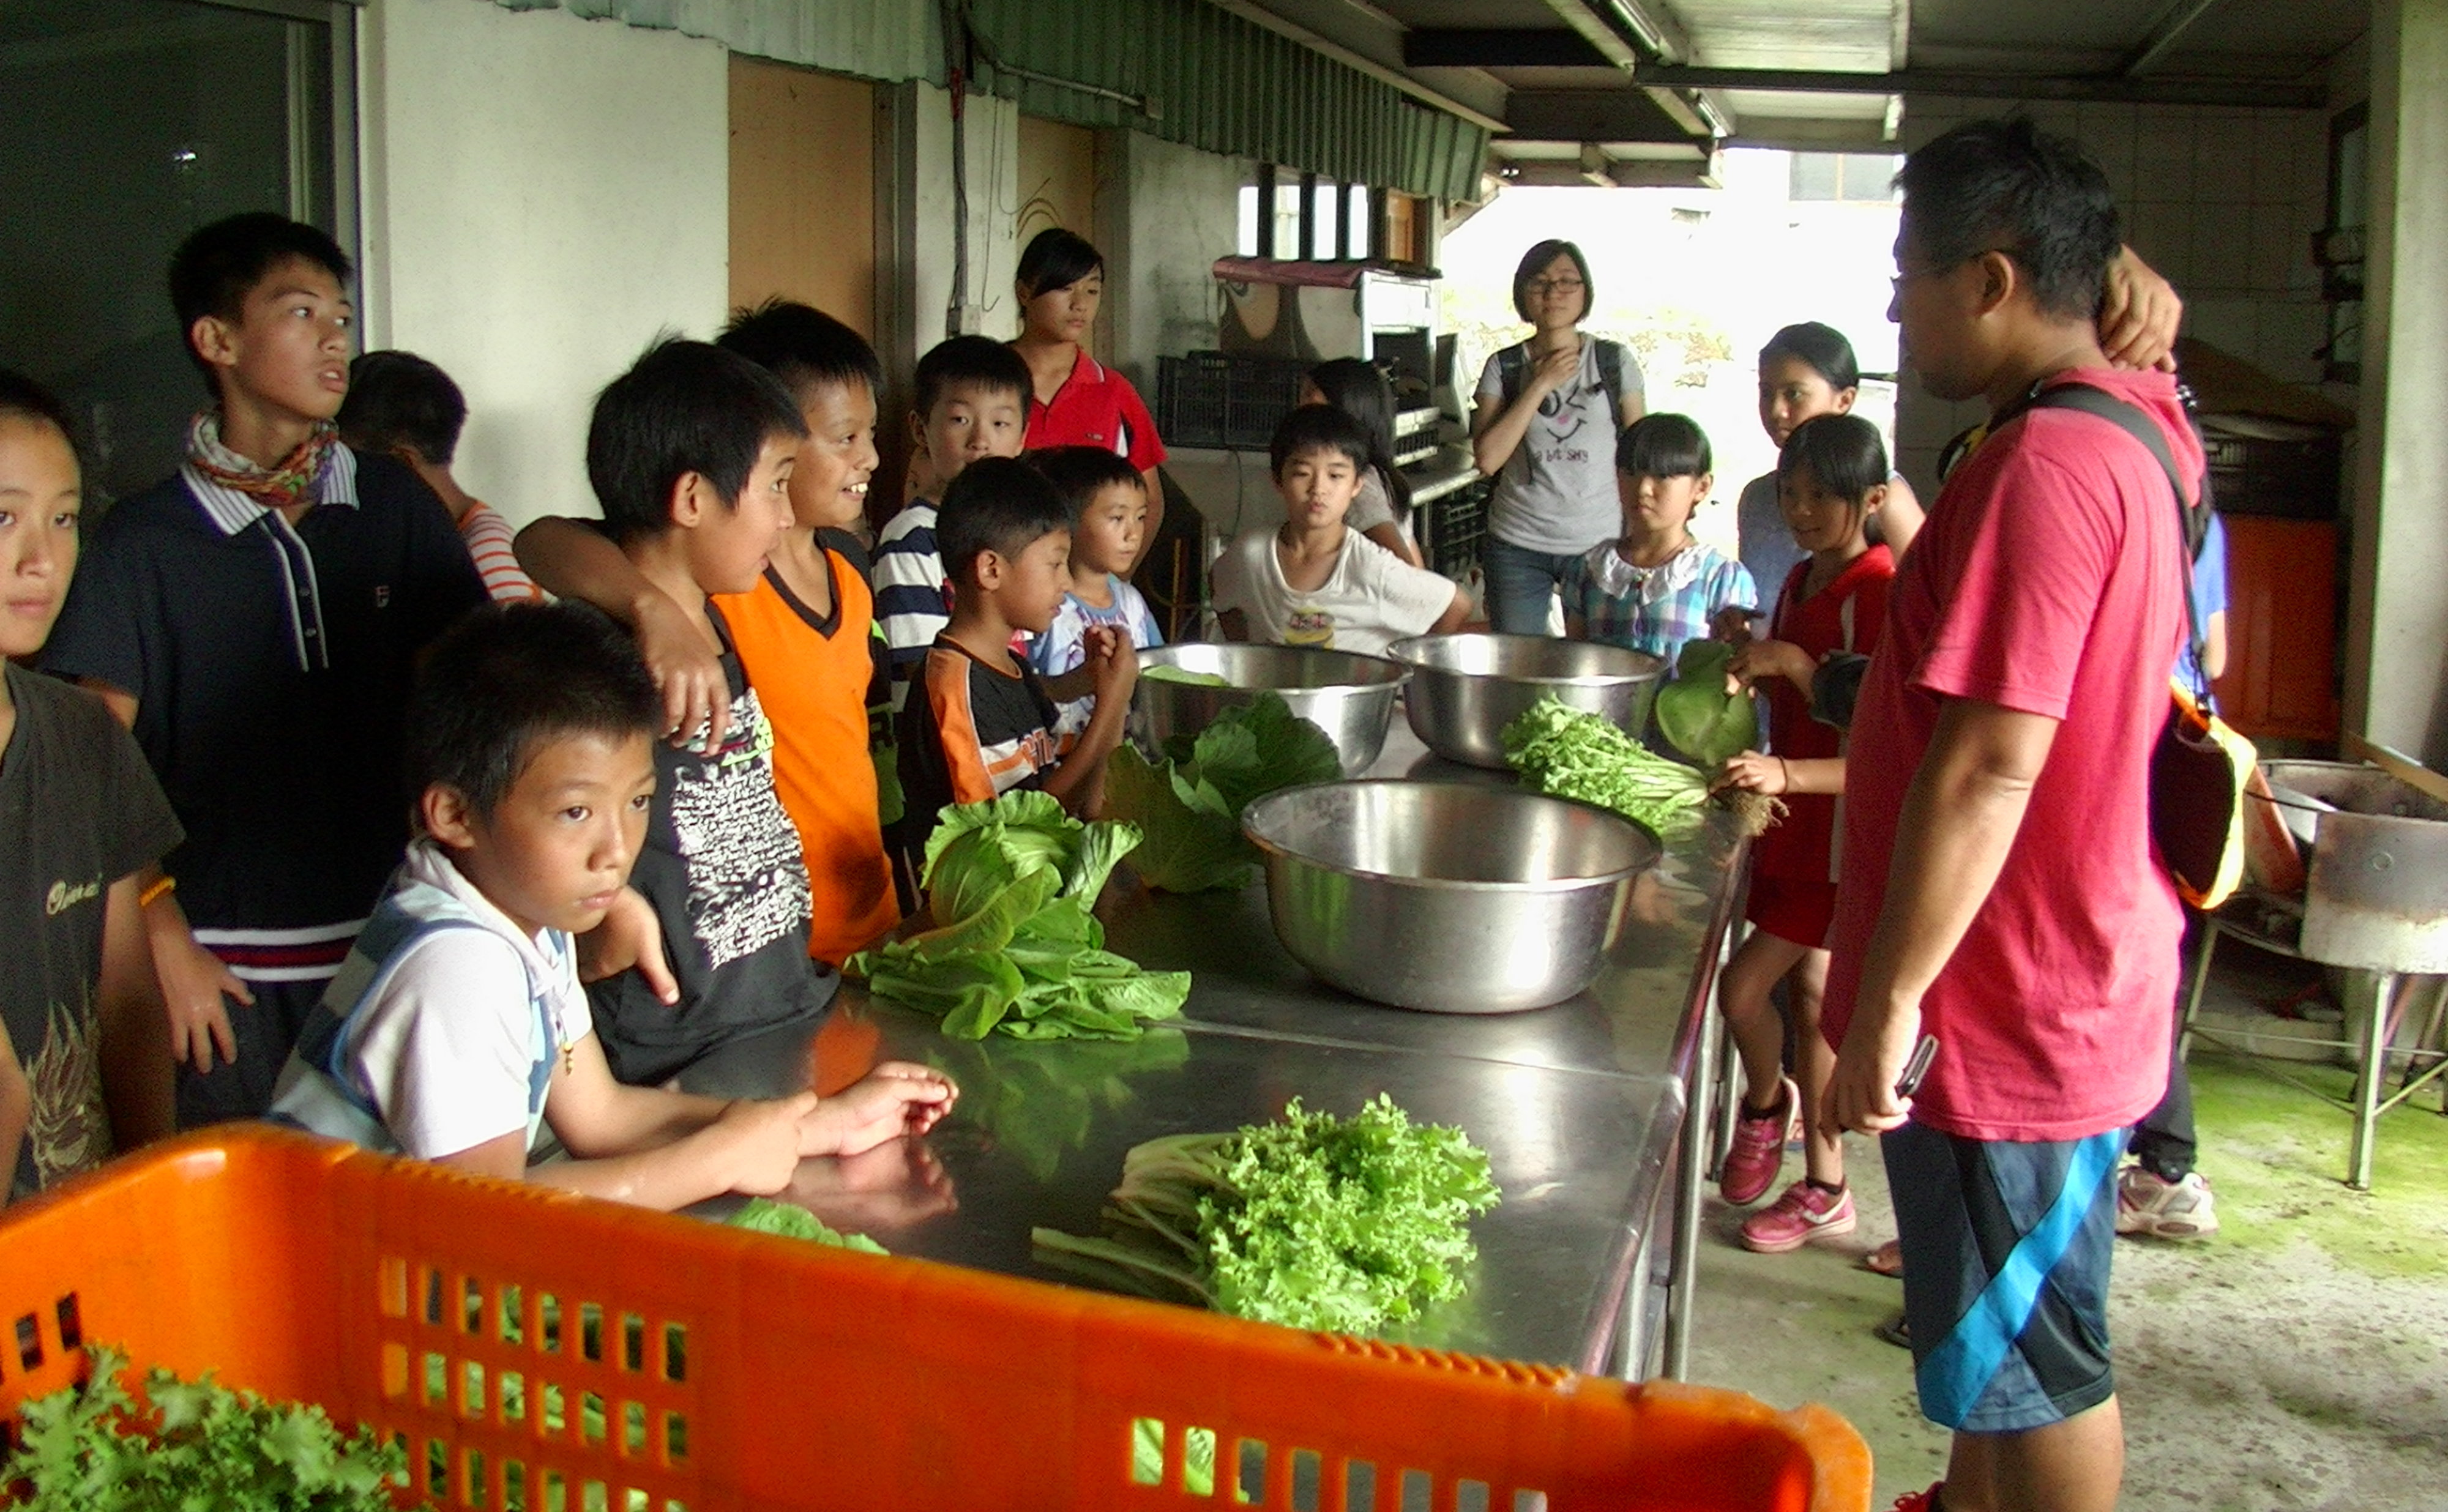 老師將學生分組進行洗蔬菜洗滌作業